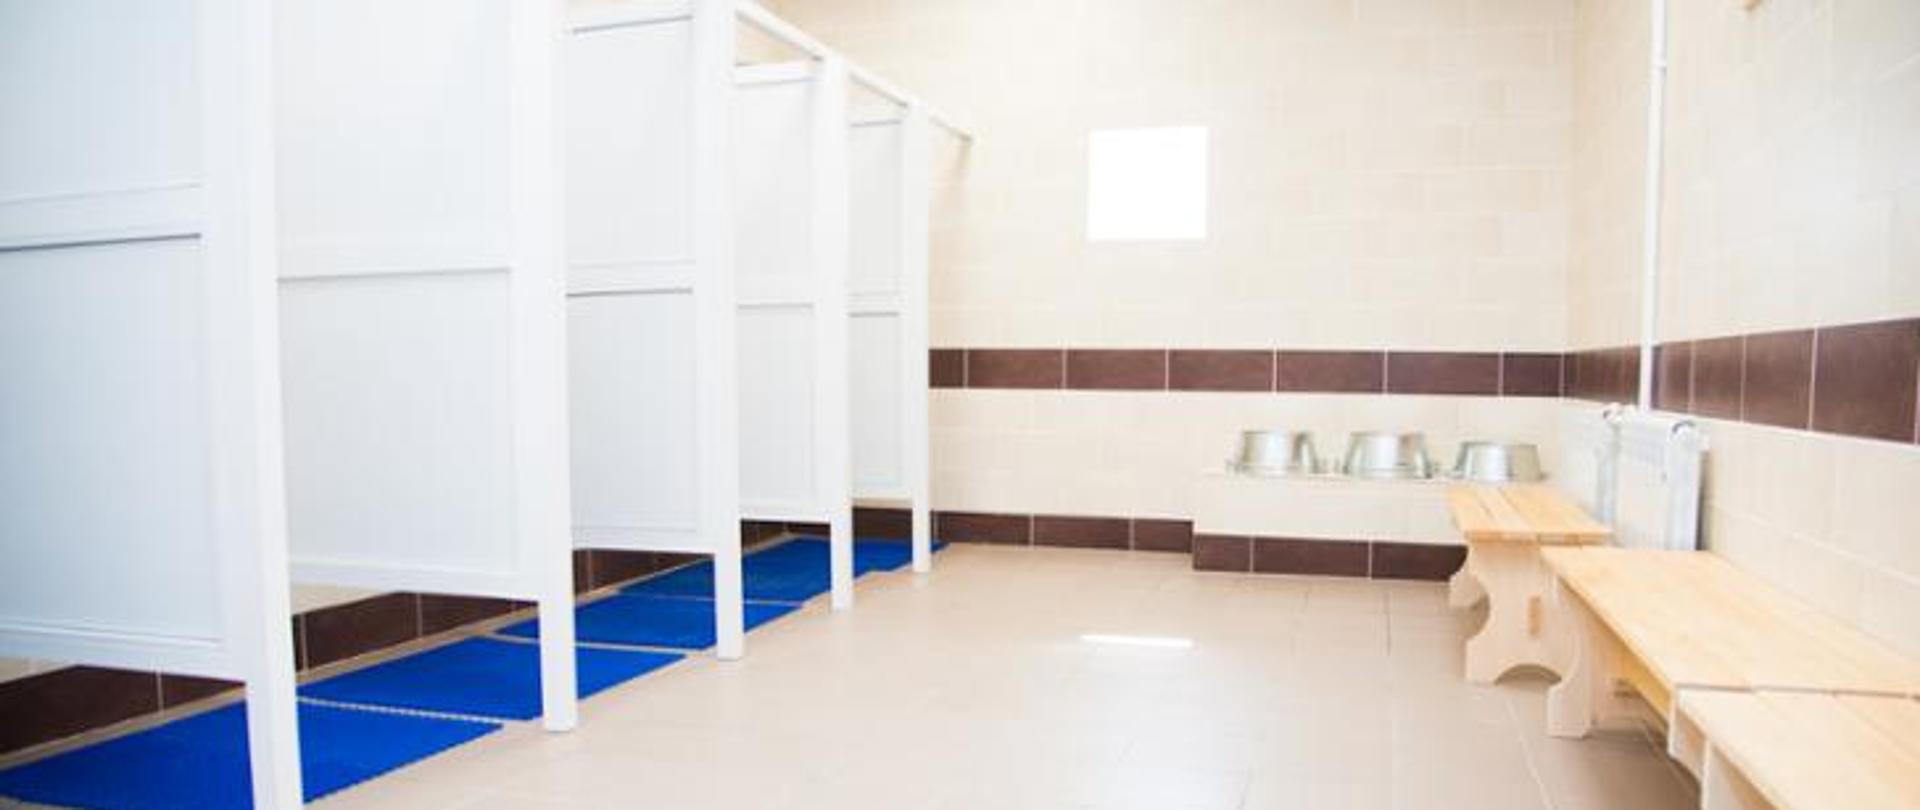 Zdjęcie przedstawia łazienkę z kabinami natryskowymi